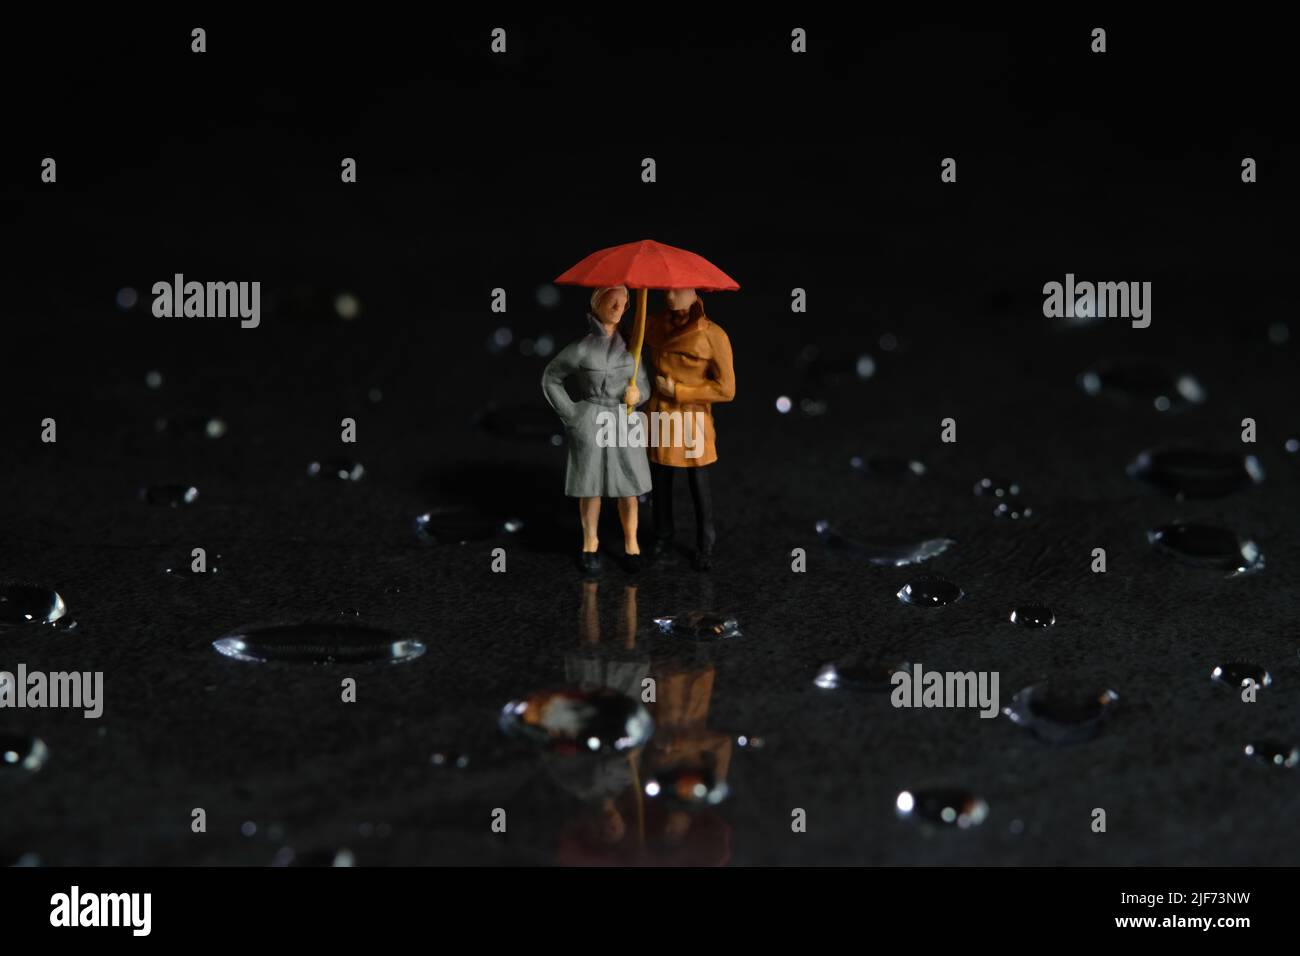 Fotografia di personaggi giocattolo in miniatura. Una coppia che usa l'ombrello, camminando sul pavimento pieno di goccioline. Sfondo cielo nuvoloso scuro. Foto immagine Foto Stock